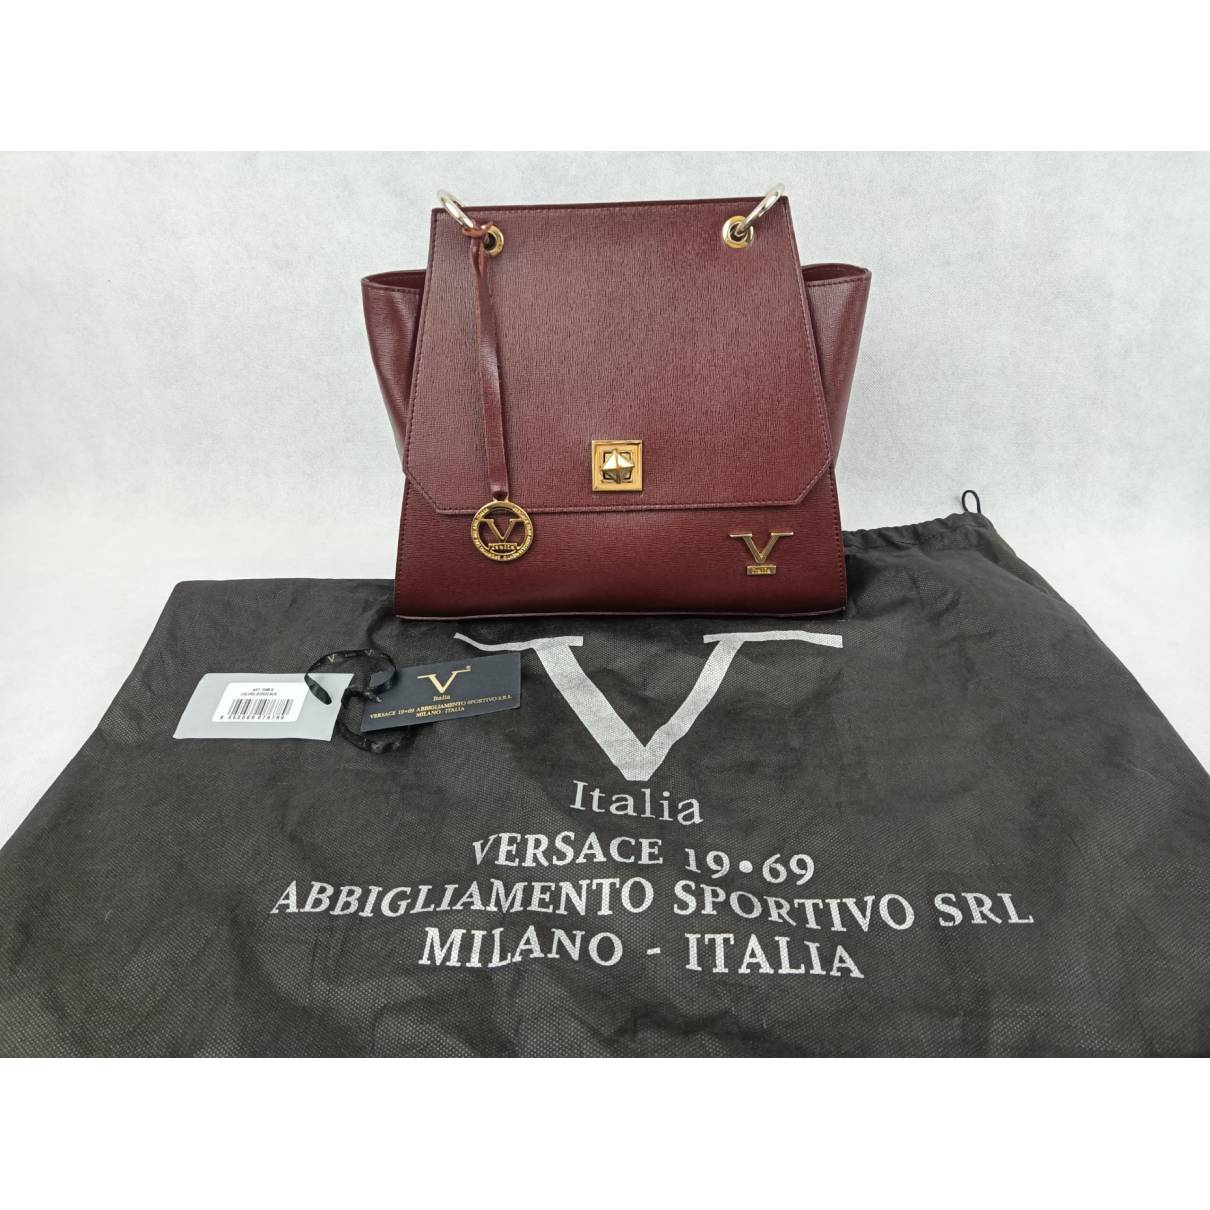 Versace 1969 Abbigliamento Sportivo SRL Handbag